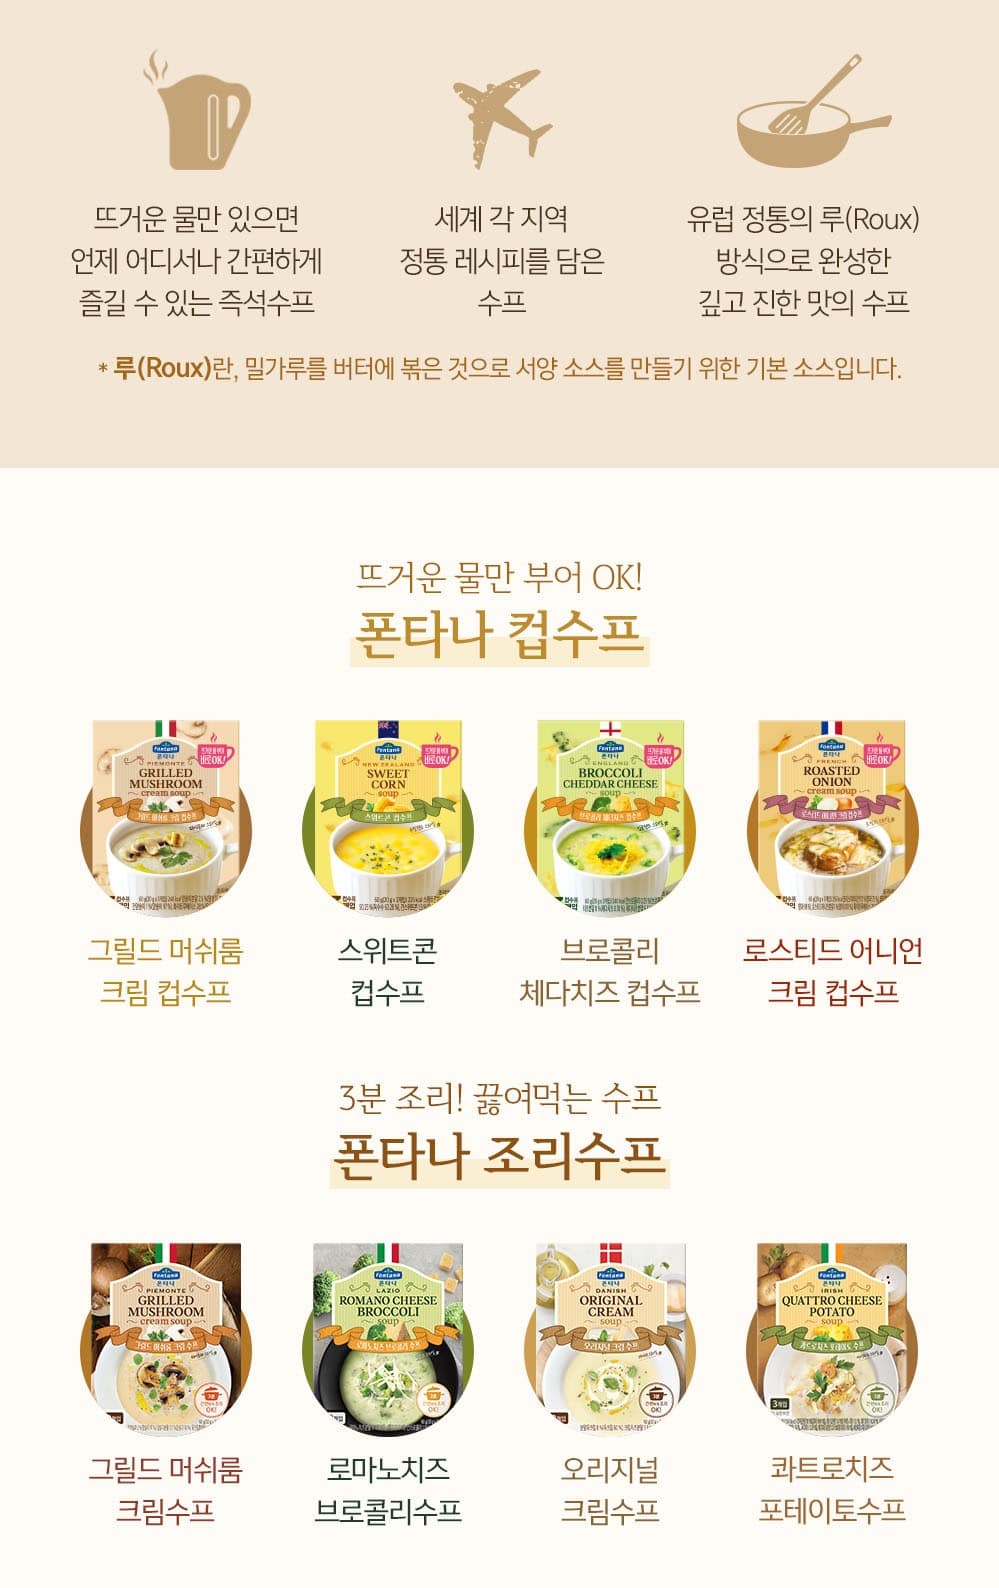 韓國食品-[膳府] Fontana濃湯 (法式洋蔥忌廉) 20g*3